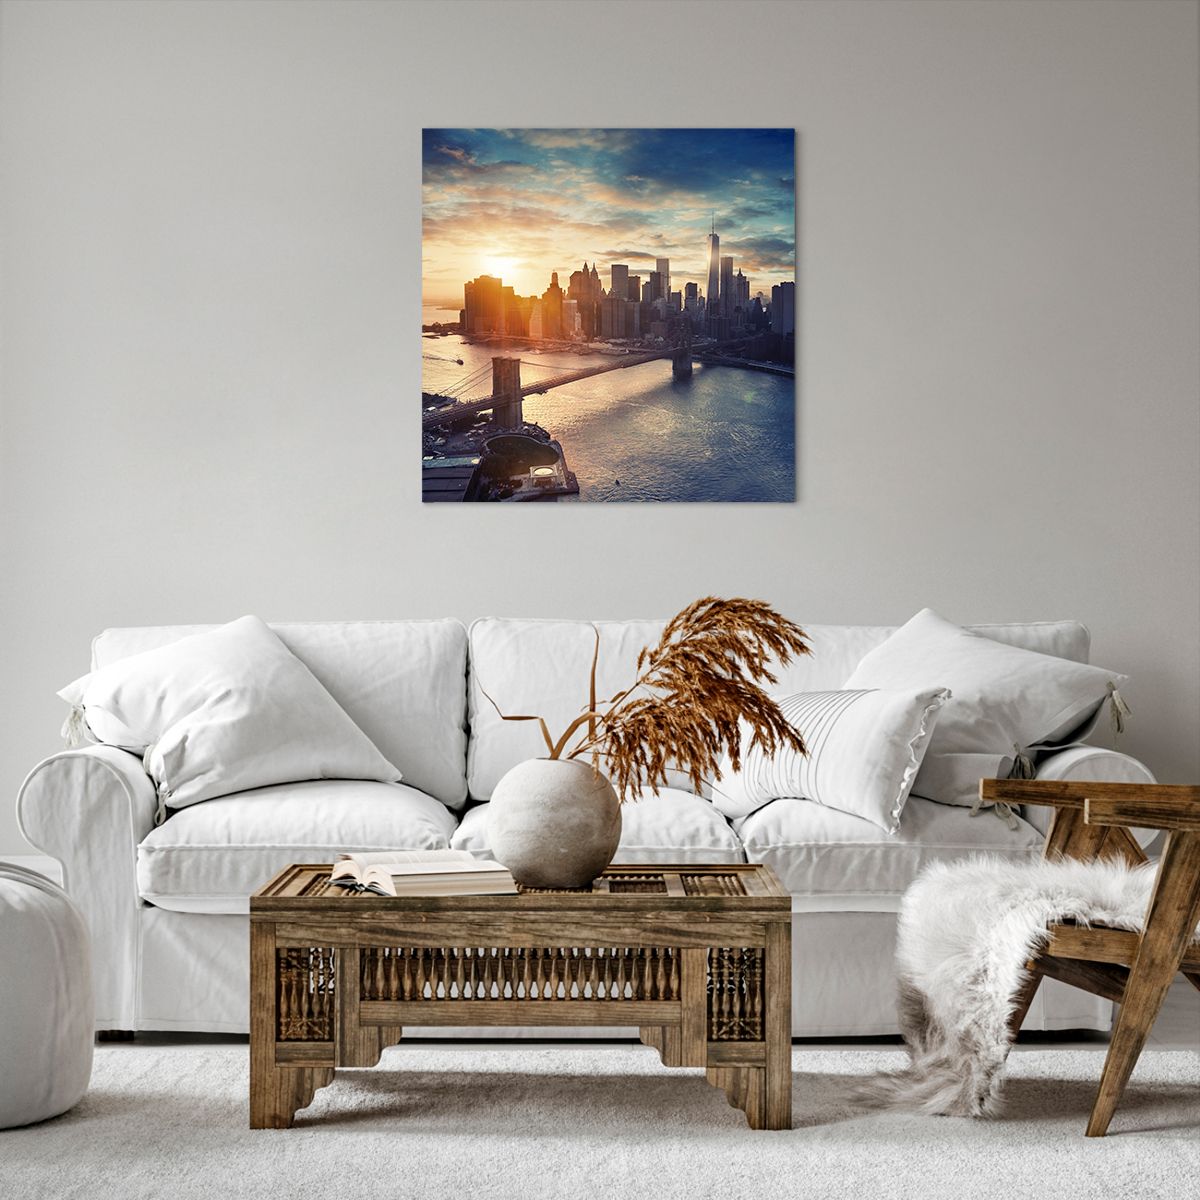 Bild auf Leinwand New York, Bild auf Leinwand Brooklyn Brücke, Bild auf Leinwand Die Architektur, Bild auf Leinwand Stadt, Bild auf Leinwand Der Sonnenuntergang